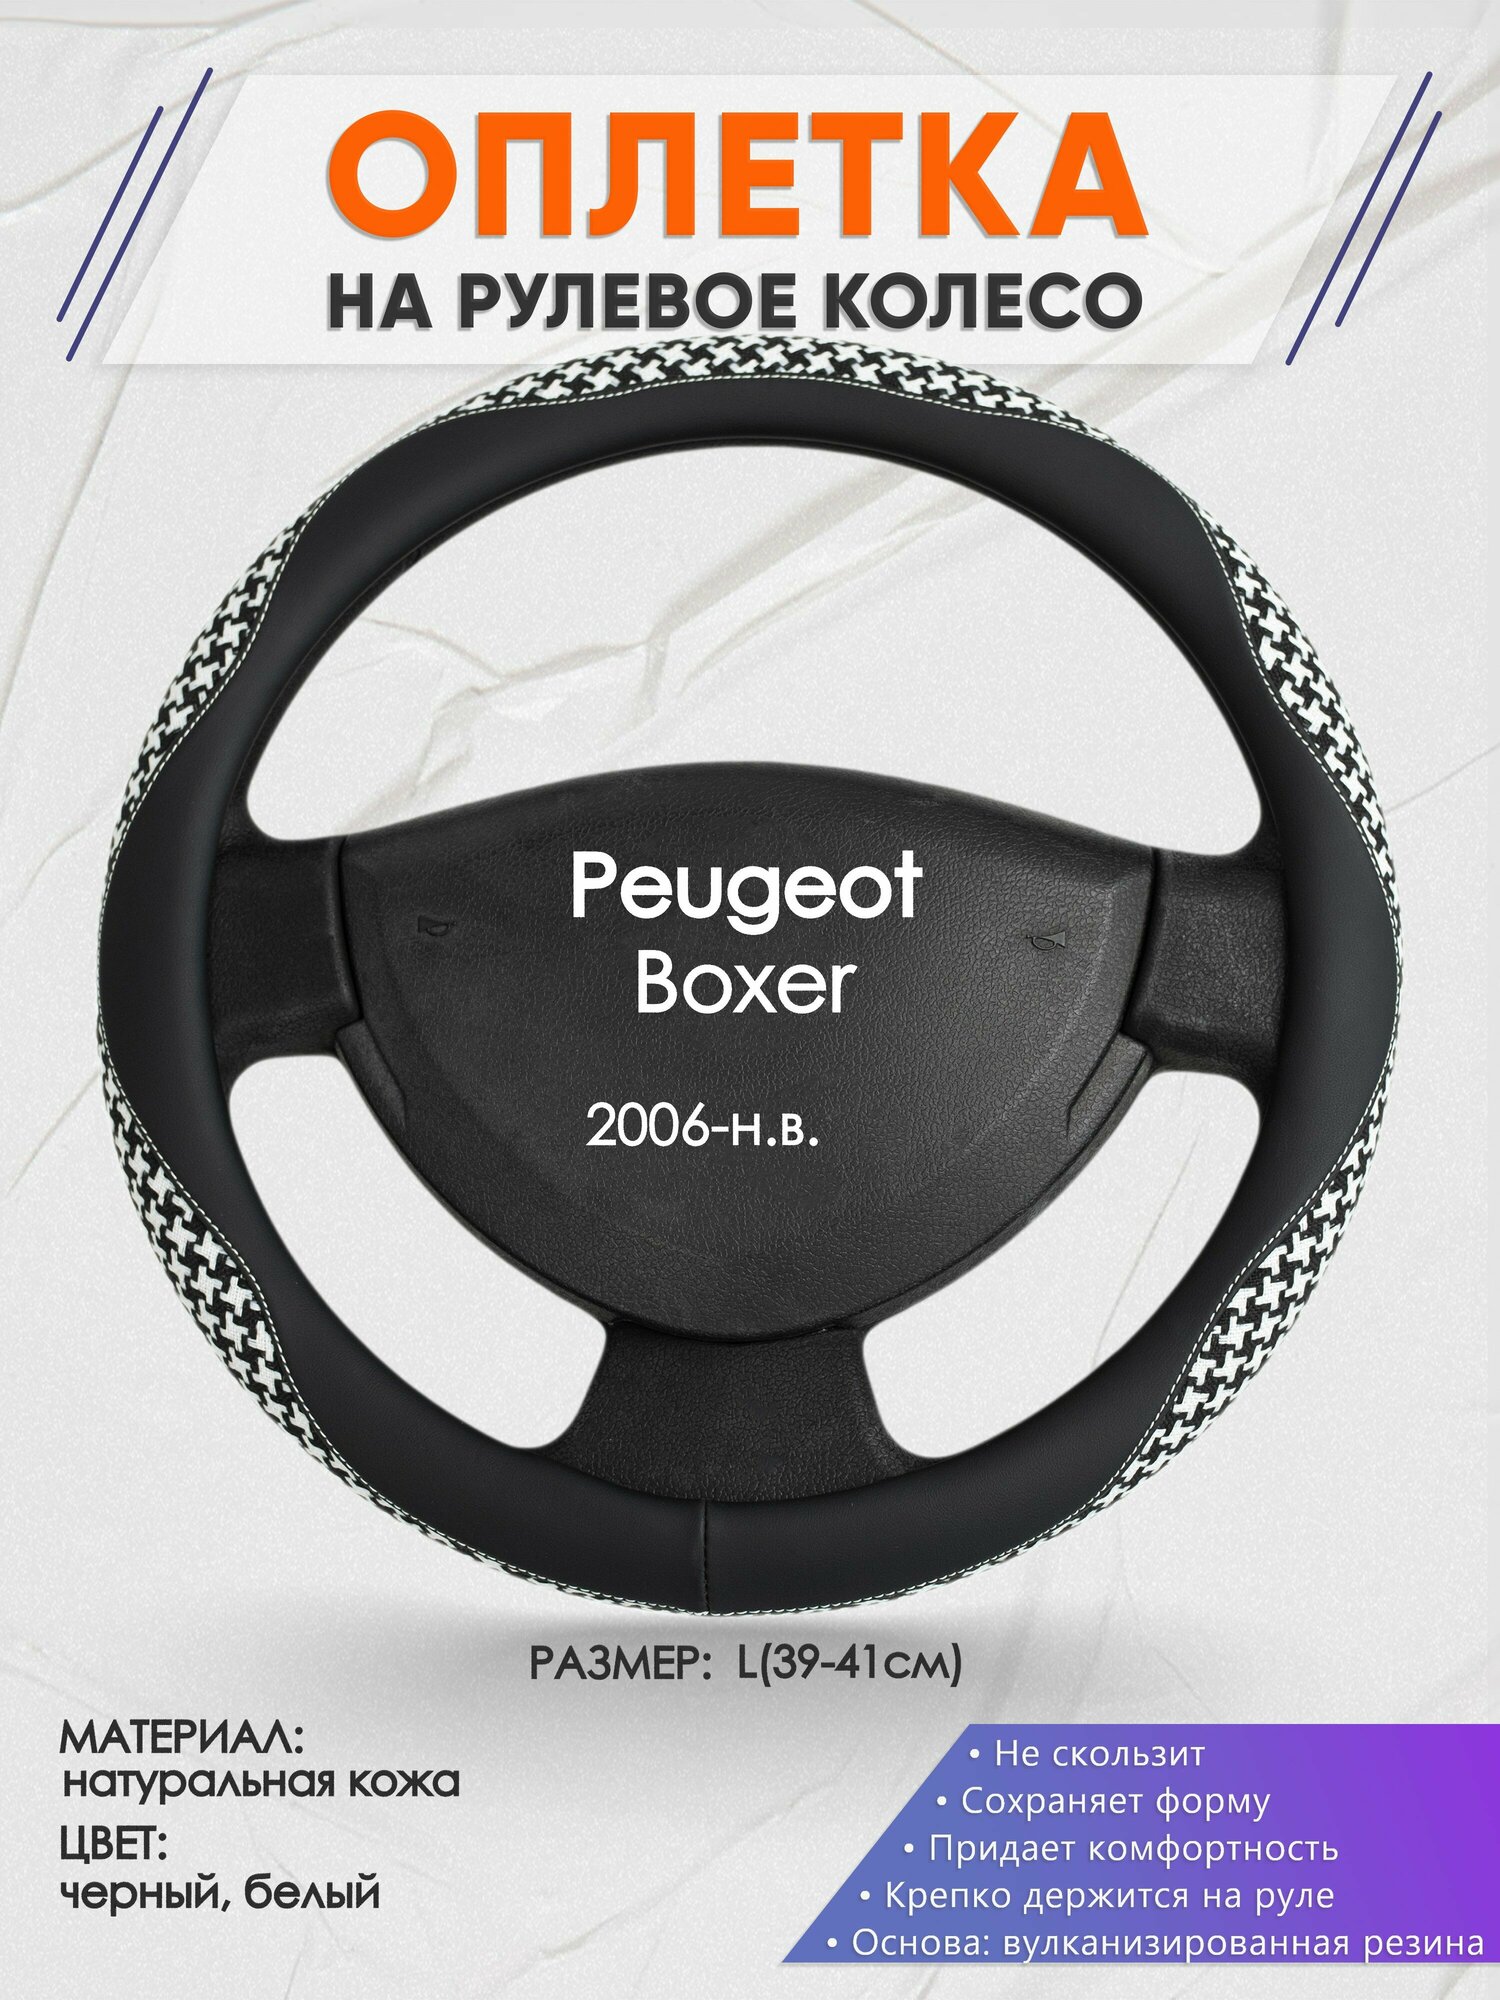 Оплетка на руль для Peugeot Boxer (Пежо Боксер) 2006-н. в, L(39-41см), Натуральная кожа 21